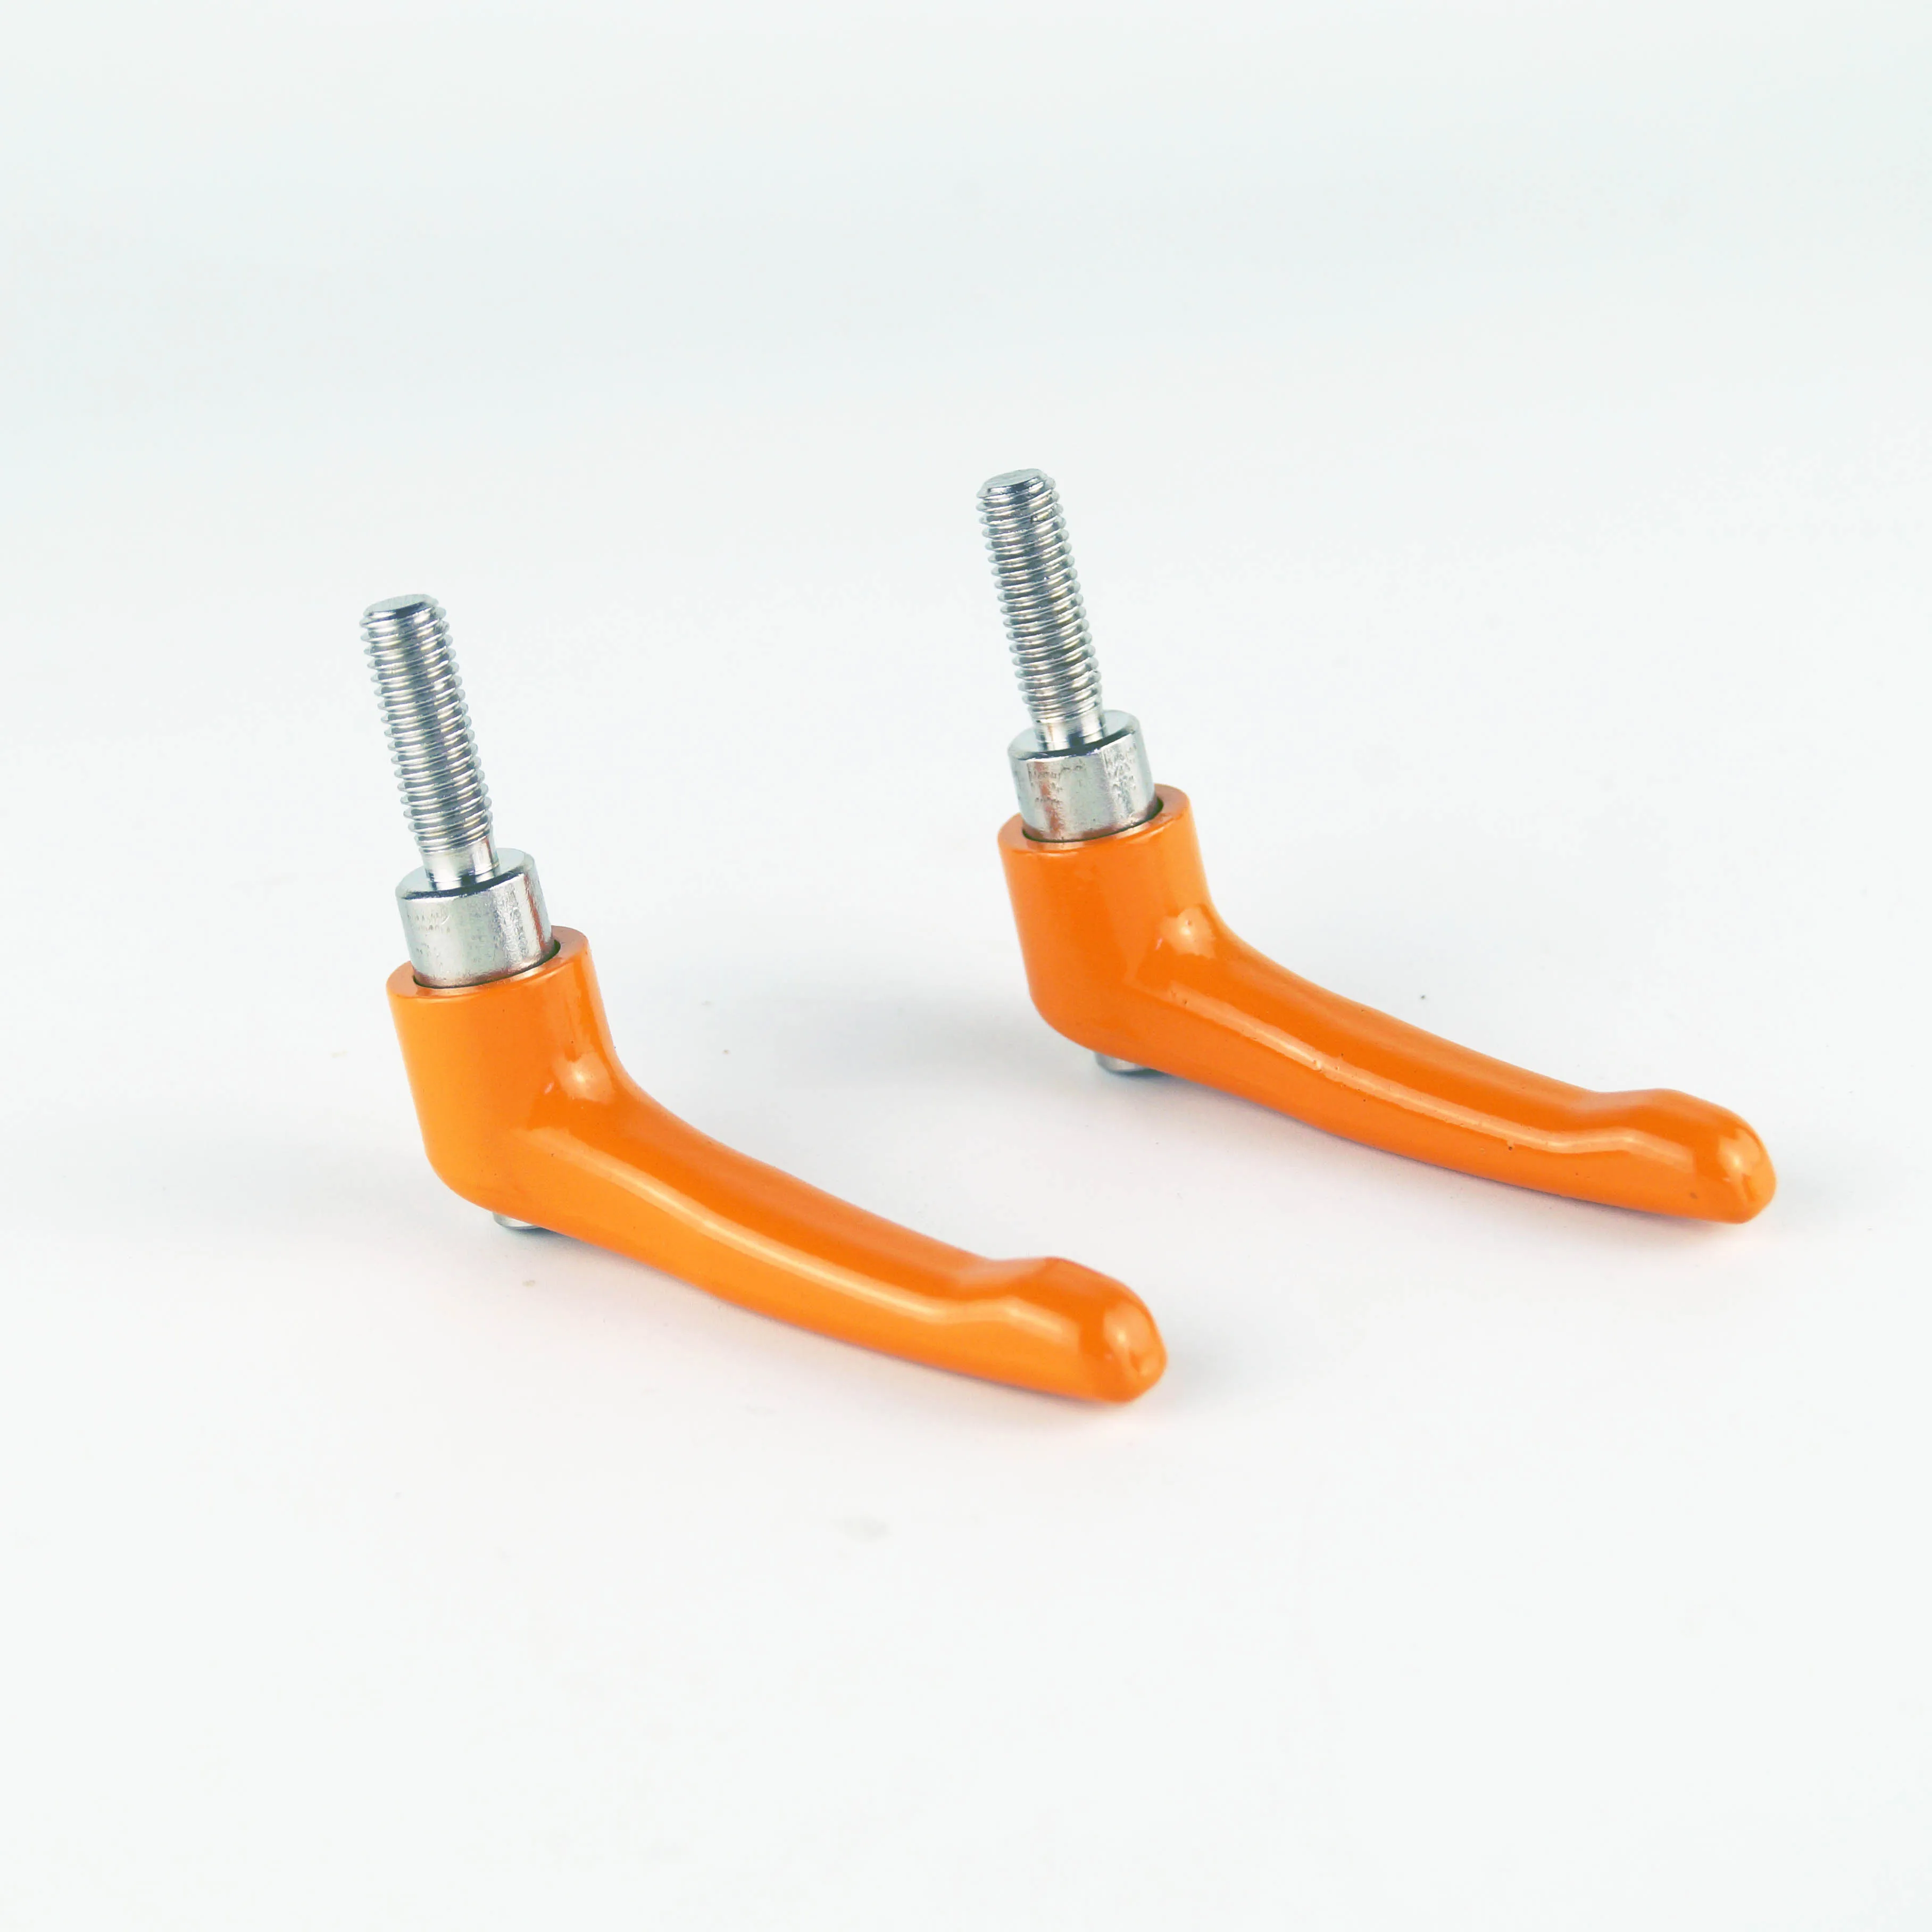 M8 laranja aisi304 stainlesss aço que aperta alavancas de tensão do punho, punho ajustável contínuo